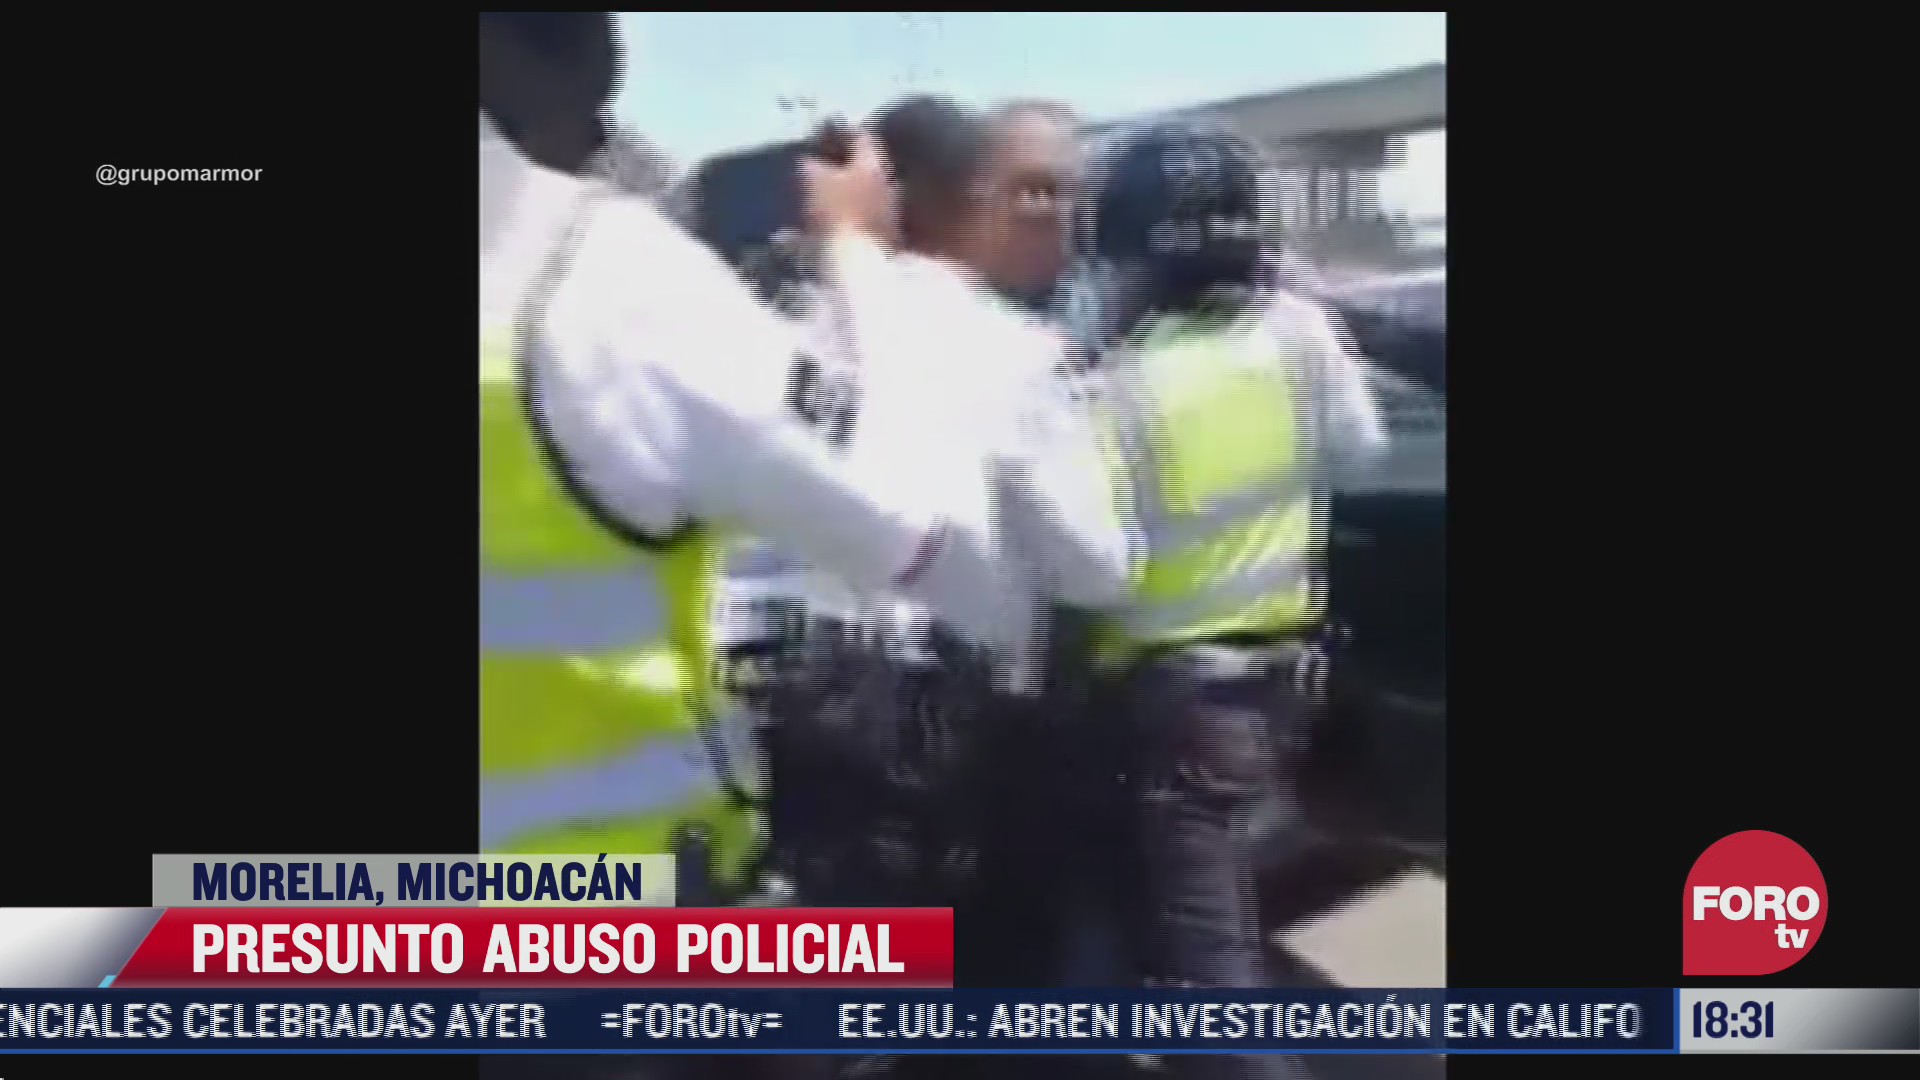 captan nuevo abuso policial contra adulto mayor en michoacan